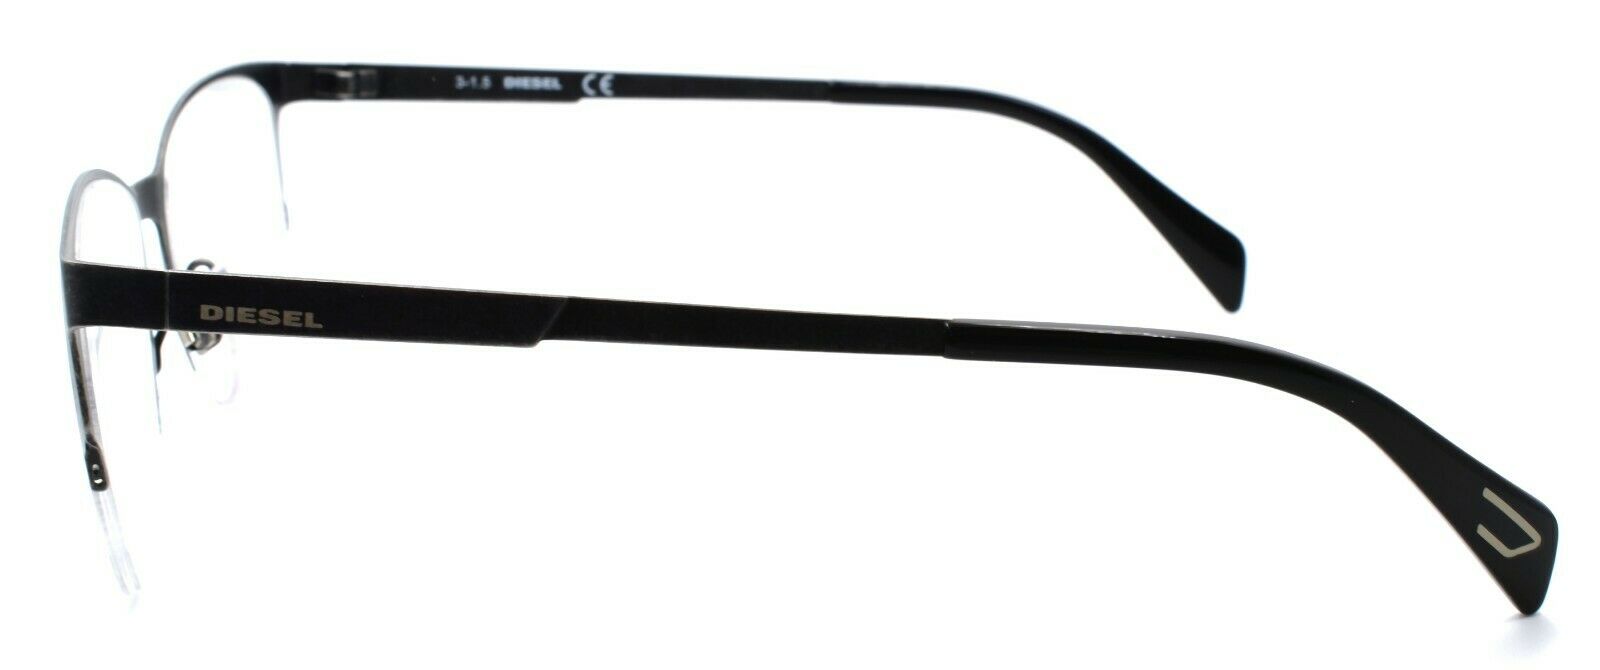 3-Diesel DL5152 009 Unisex Eyeglasses Frames Half Rim 52-16-145 Distressed Grey-664689707560-IKSpecs